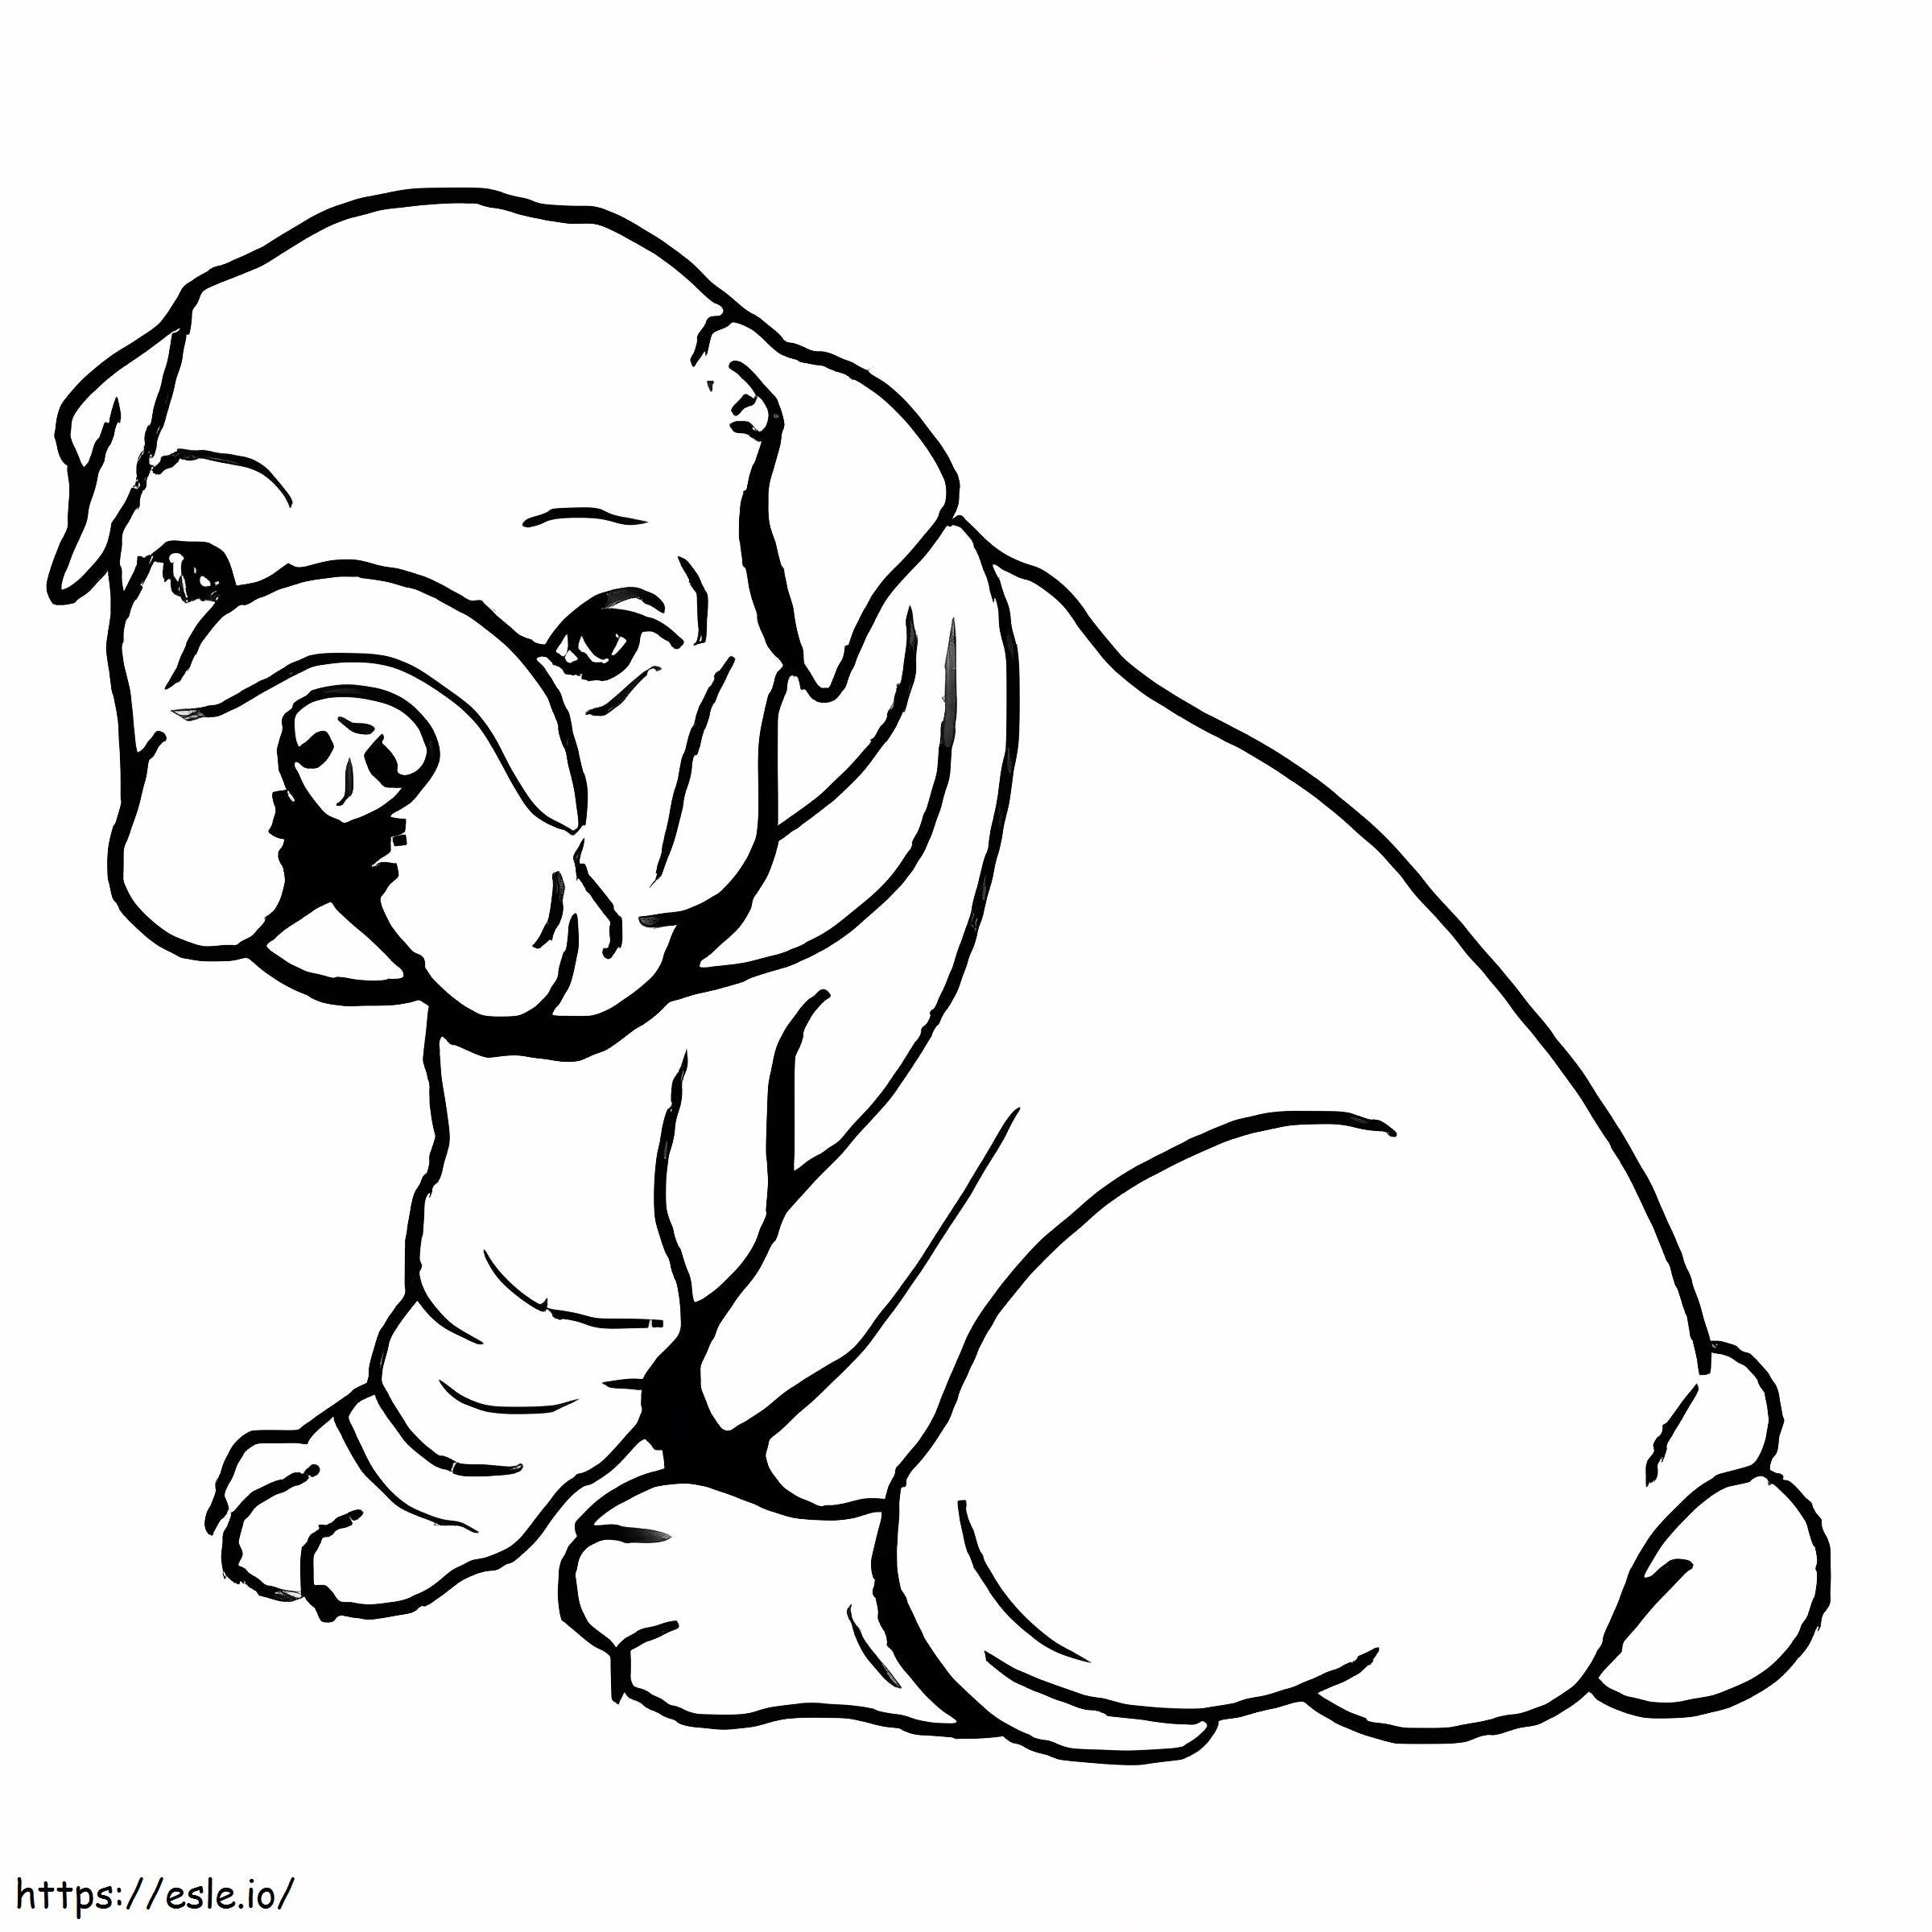 Baby Bulldog zitten kleurplaat kleurplaat